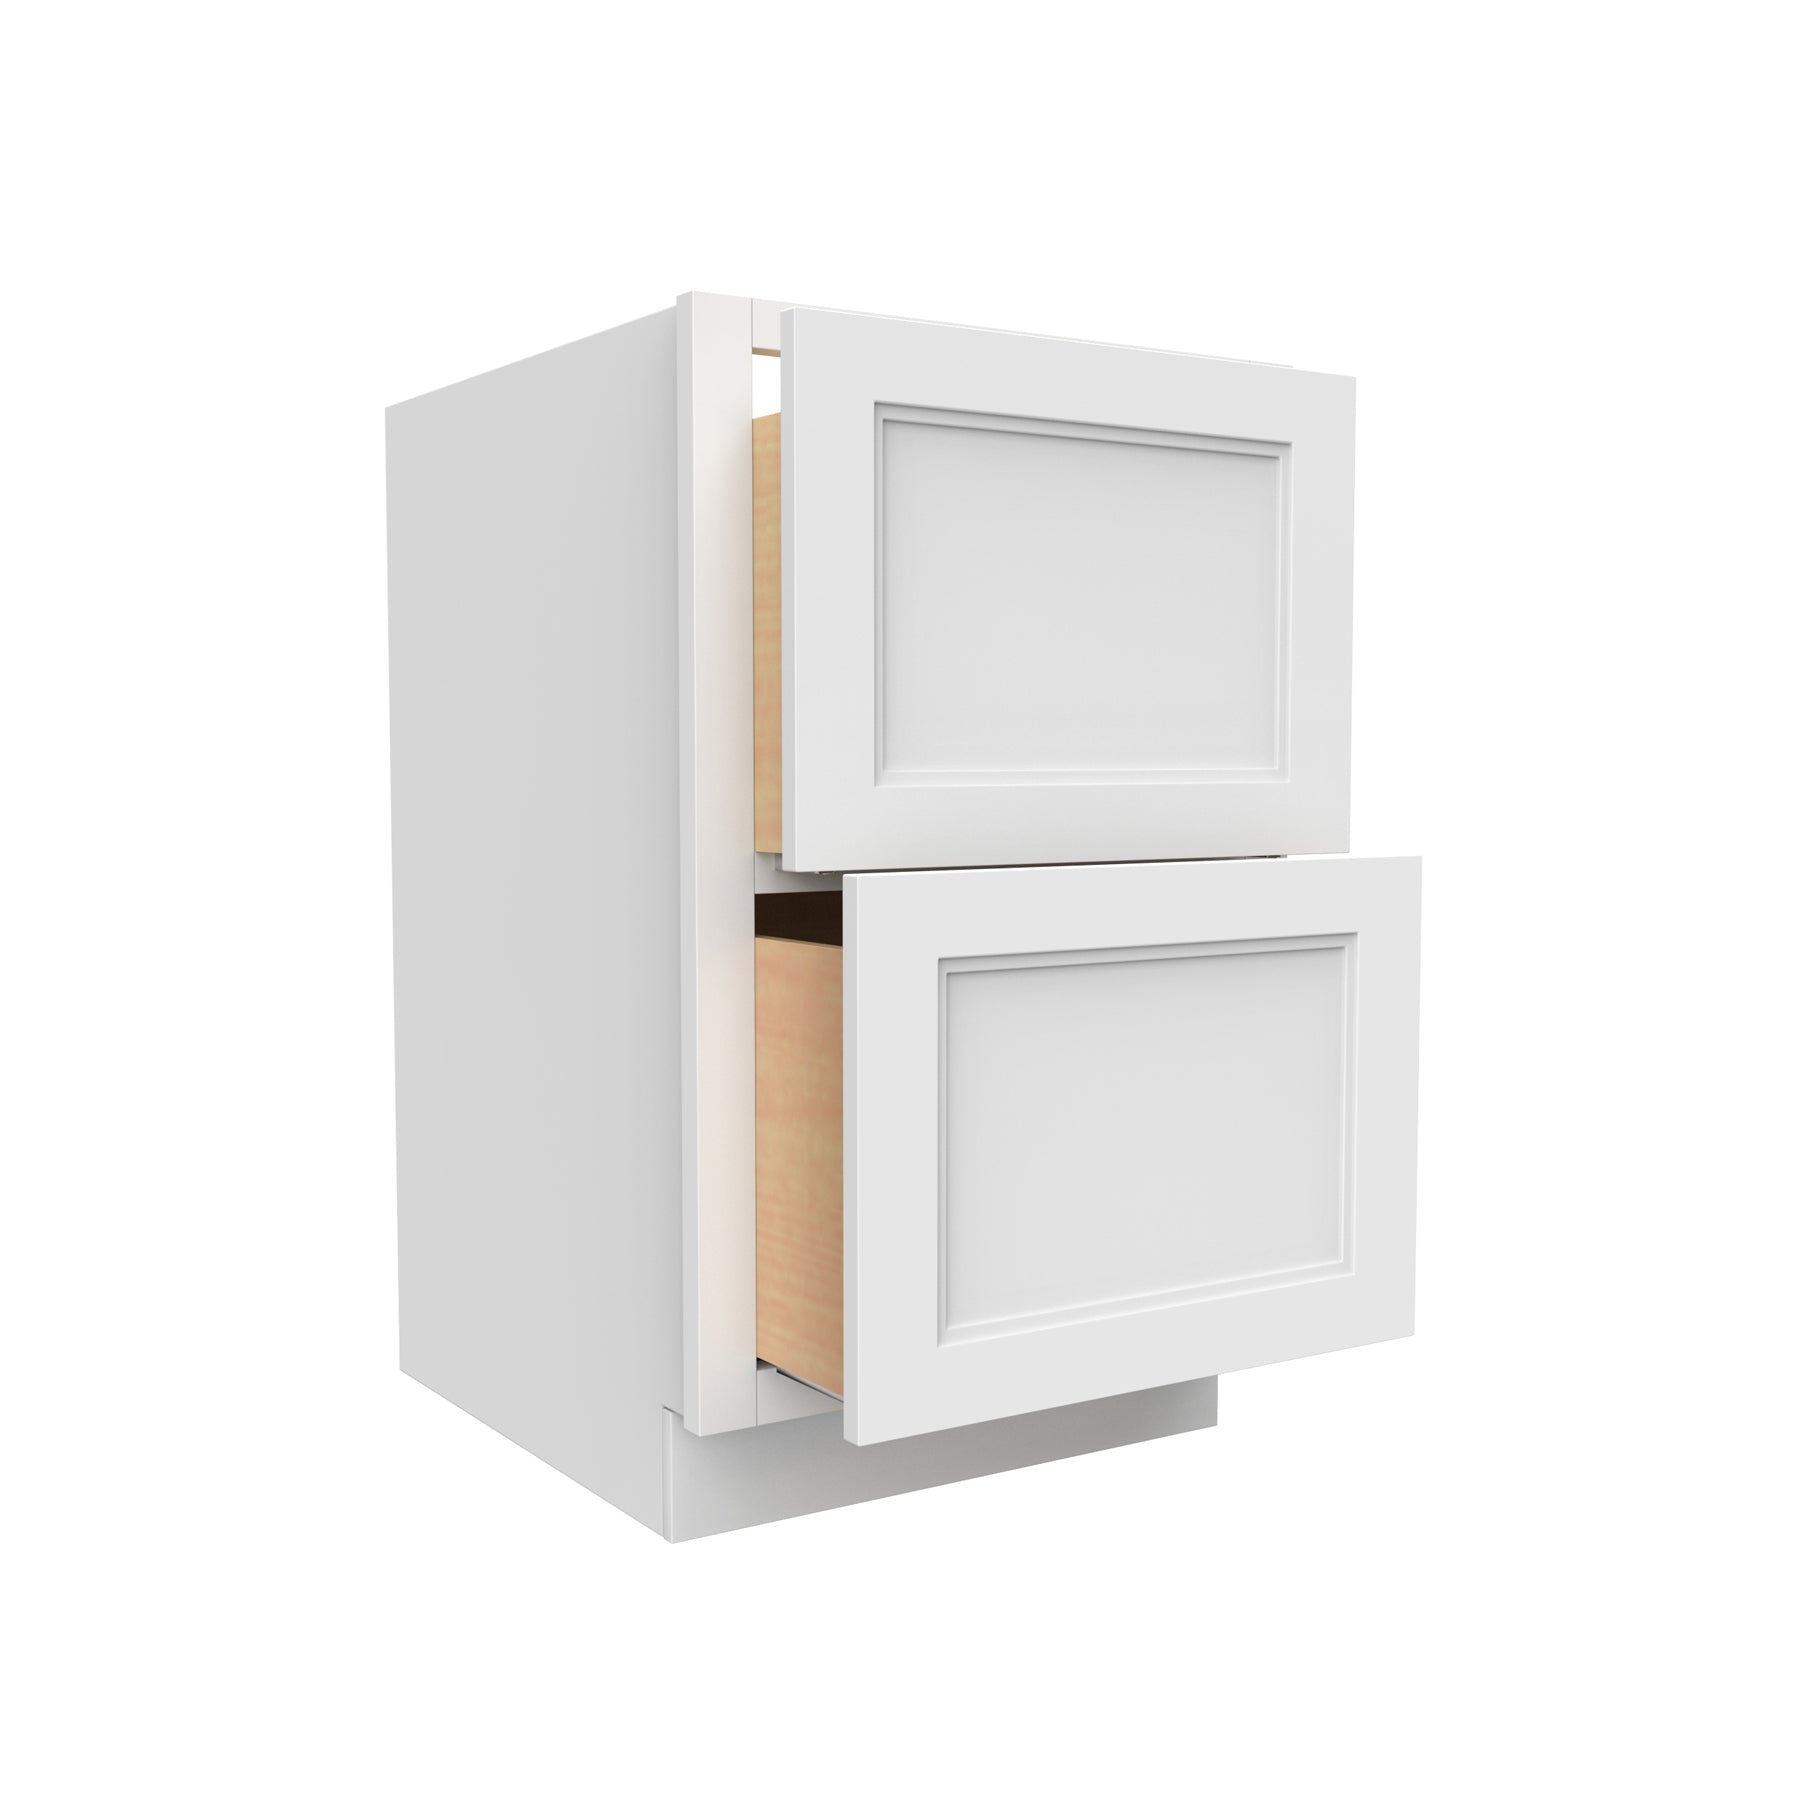 Fashion White - 2 Drawer Base Cabinet | 36"W x 34.5"H x 24"D